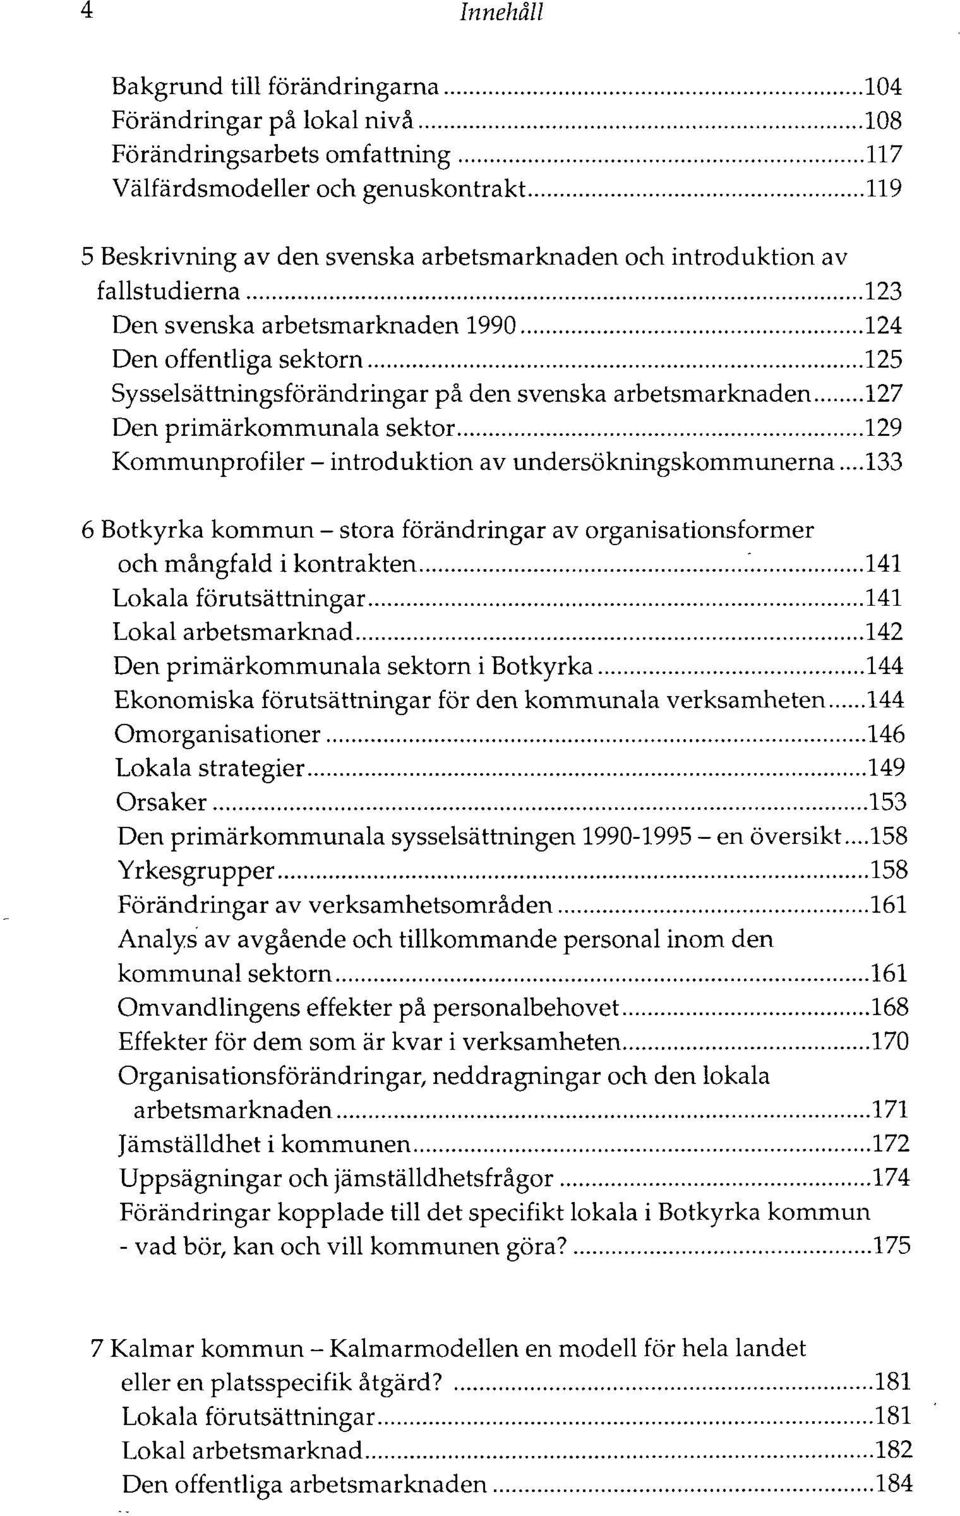 Kommunprofiler - introduktion av undersökningskommunerna...133 6 Botkyrka kommun - stora förändringar av organisationsformer och mångfald ikontrakten.'.